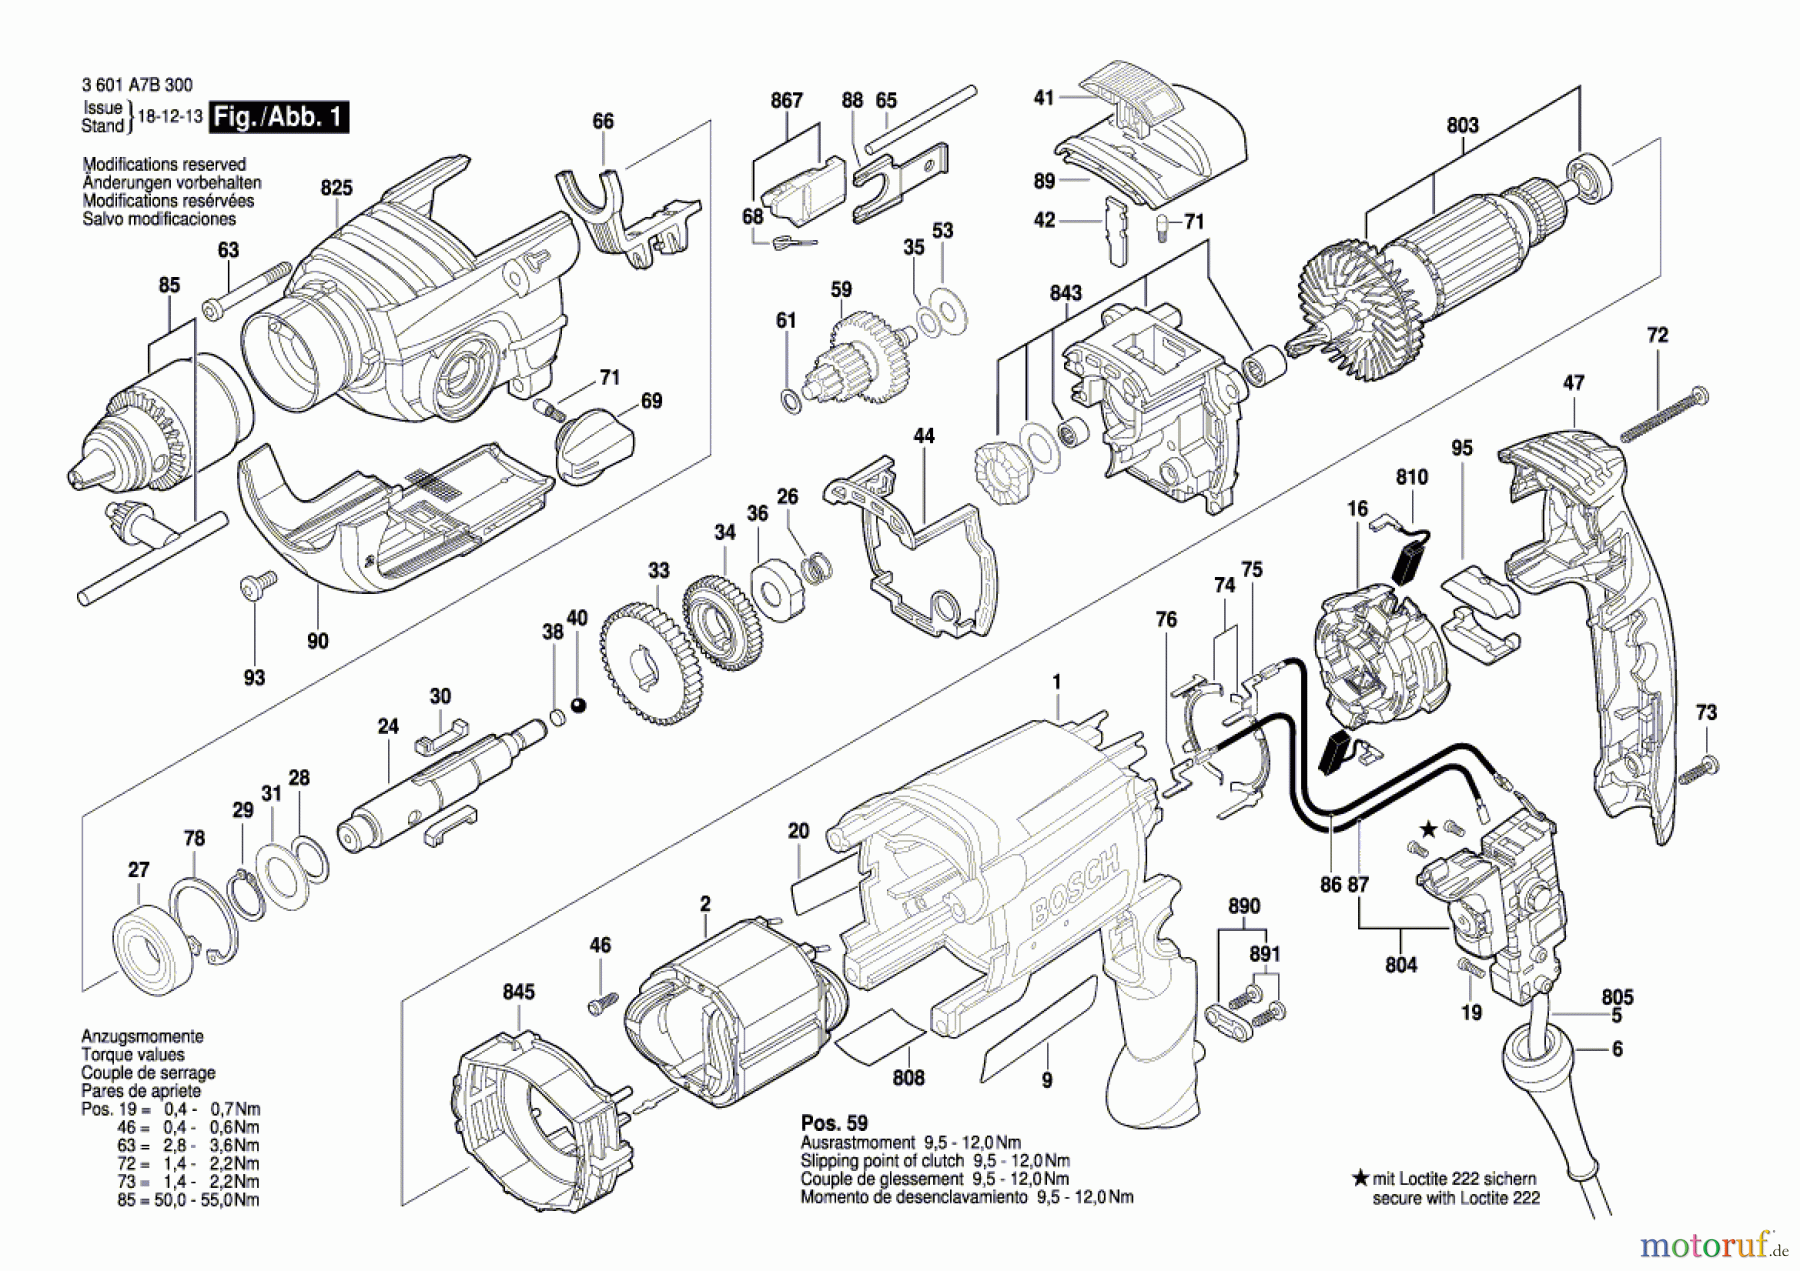  Bosch Werkzeug Schlagbohrmaschine GSB 20-2 Seite 1